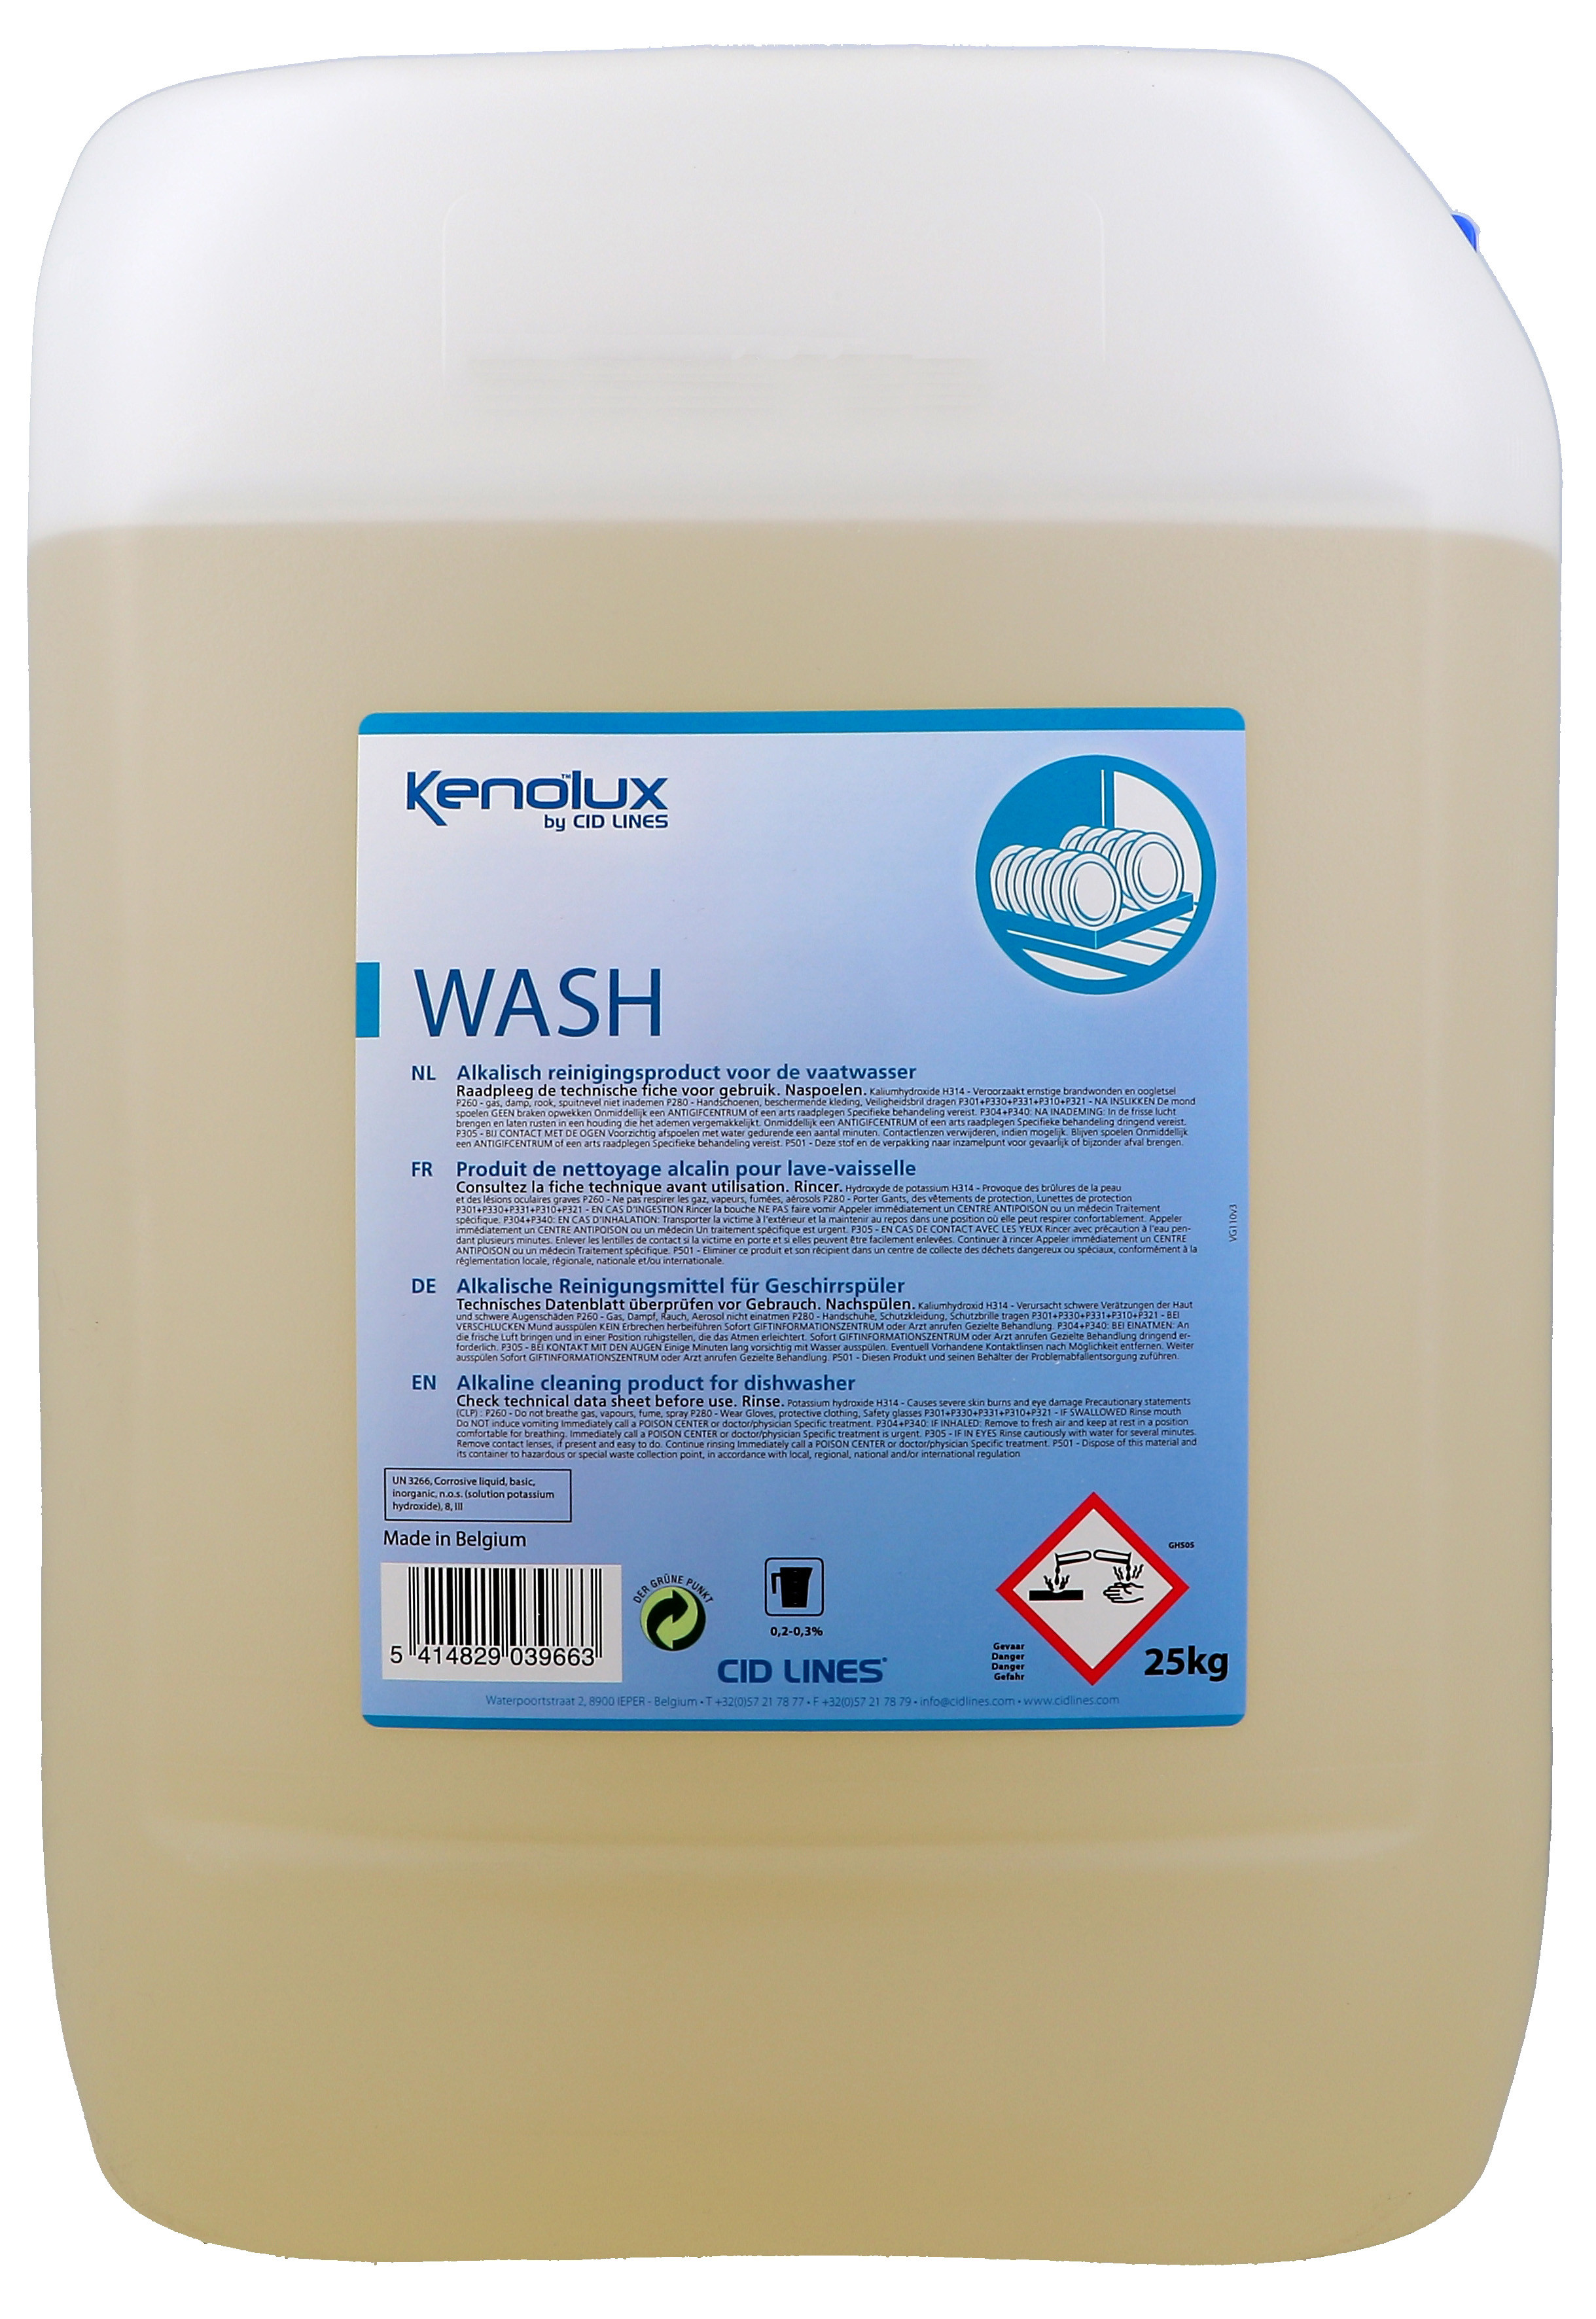 Kenolux Wash 25kg Produit de nettoyage pour lave-vaisselle Cid Lines (Vaatwasproducten)